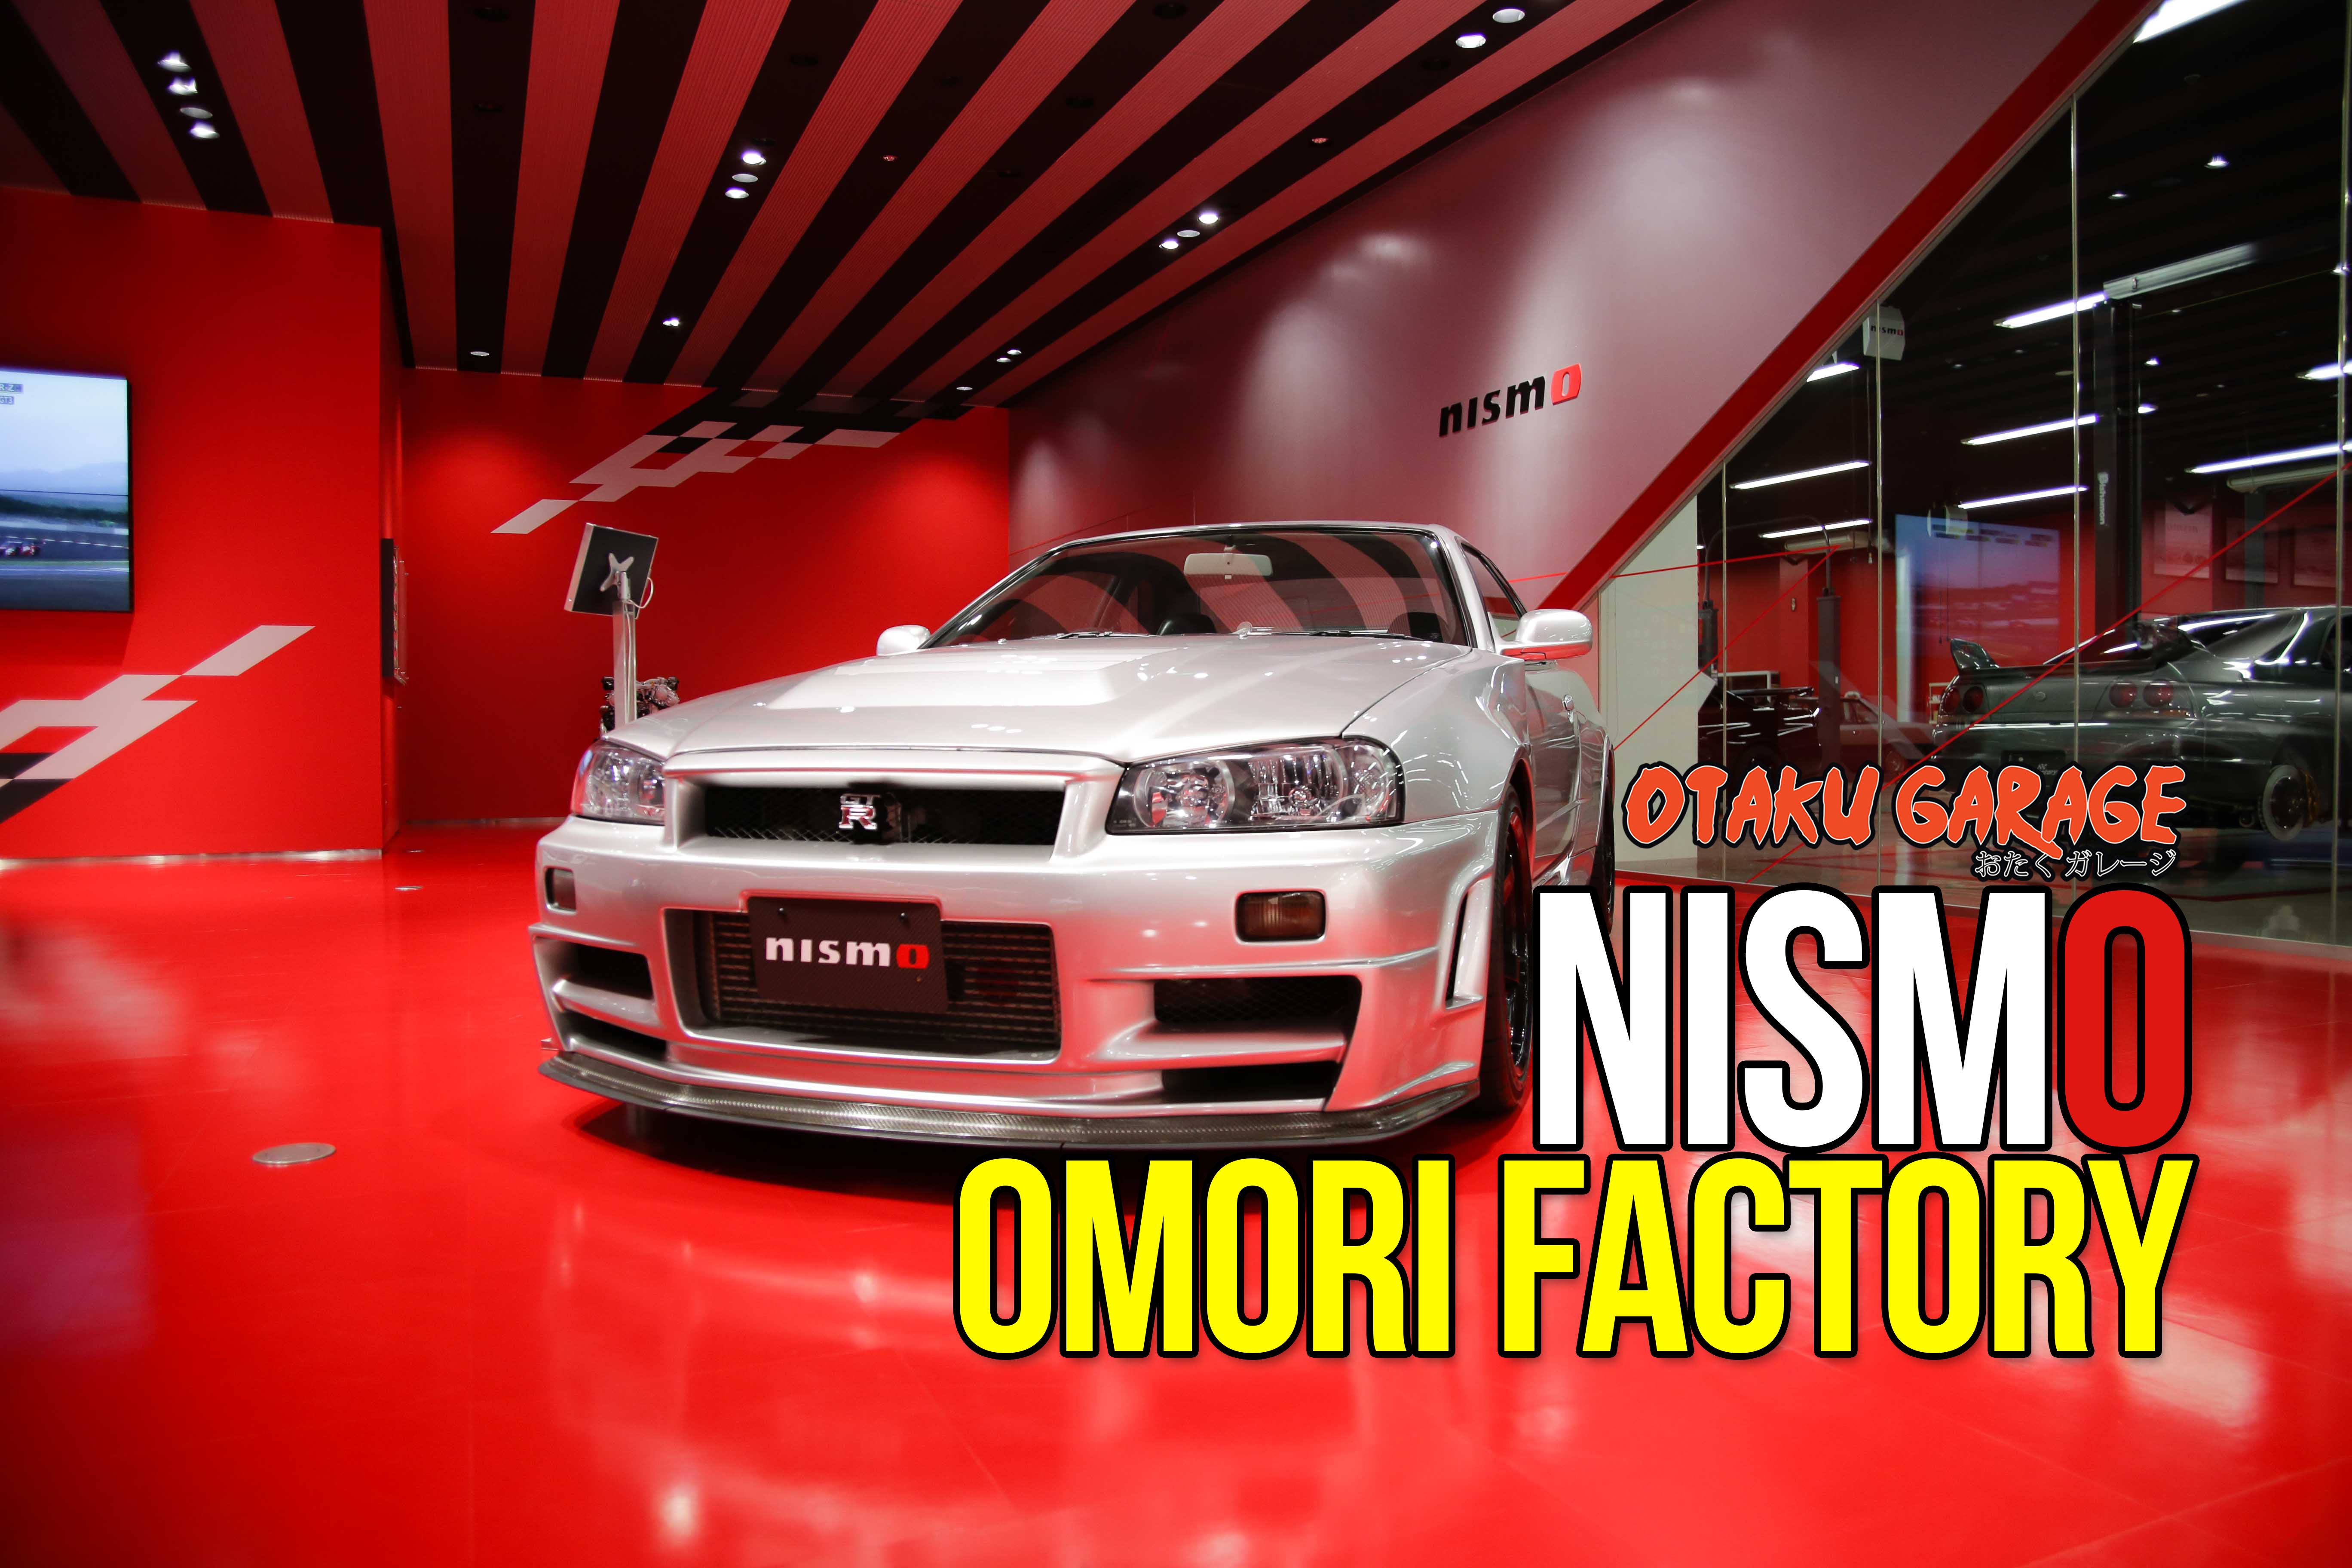 Nismo Omori Factory - Otaku Garage